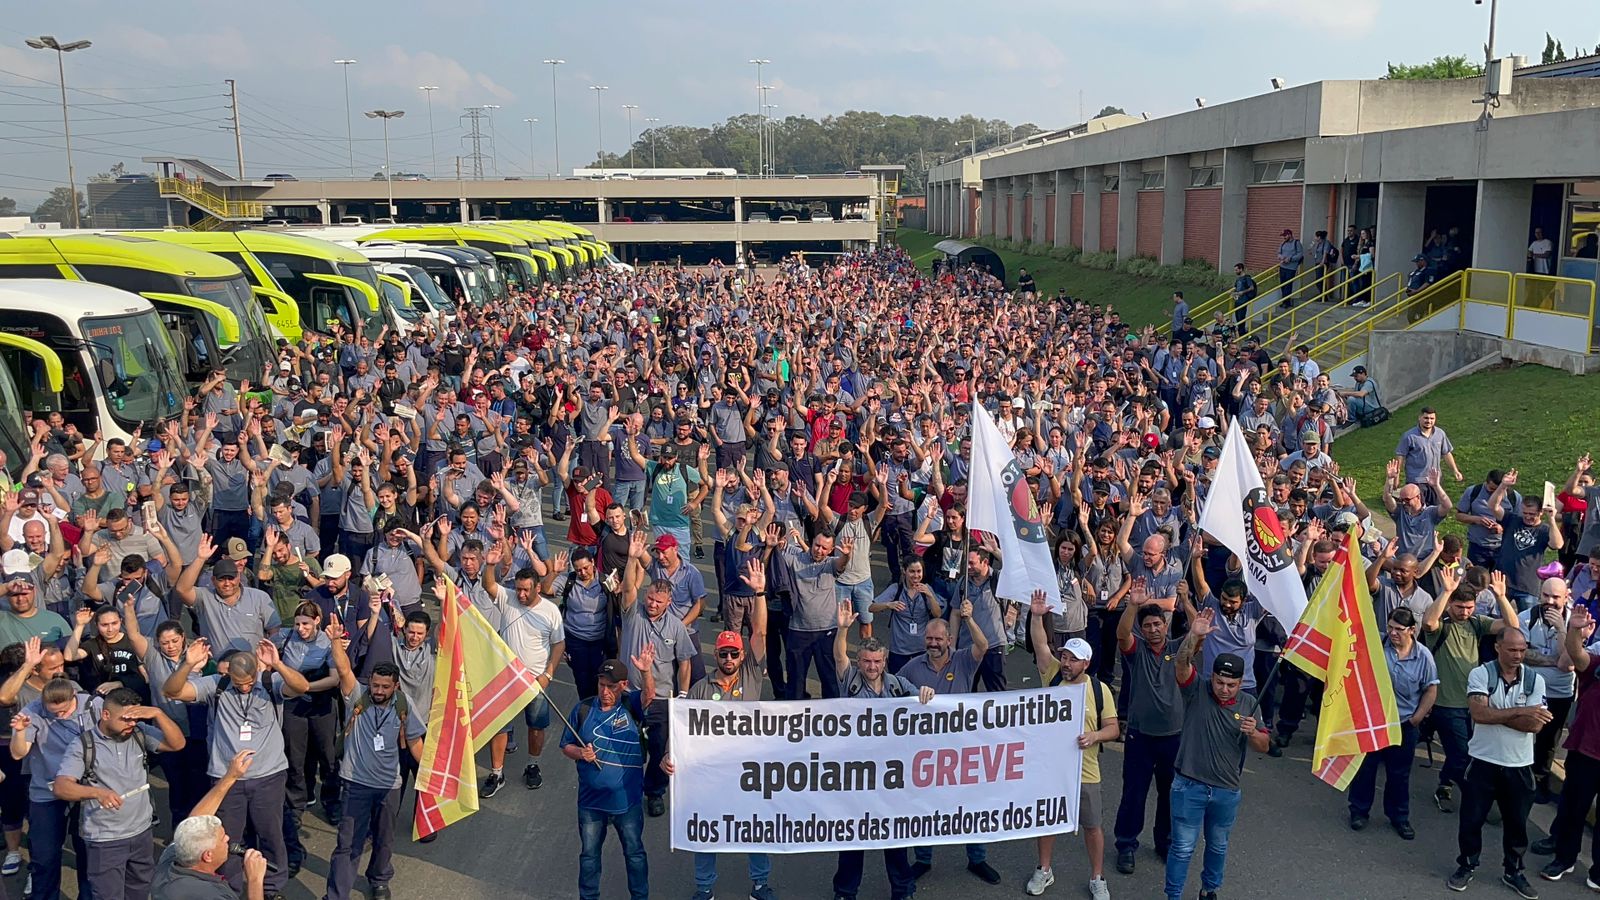 Volvo: Metalúrgicos manifestam apoio à greve de trabalhadores das montadoras dos EUA